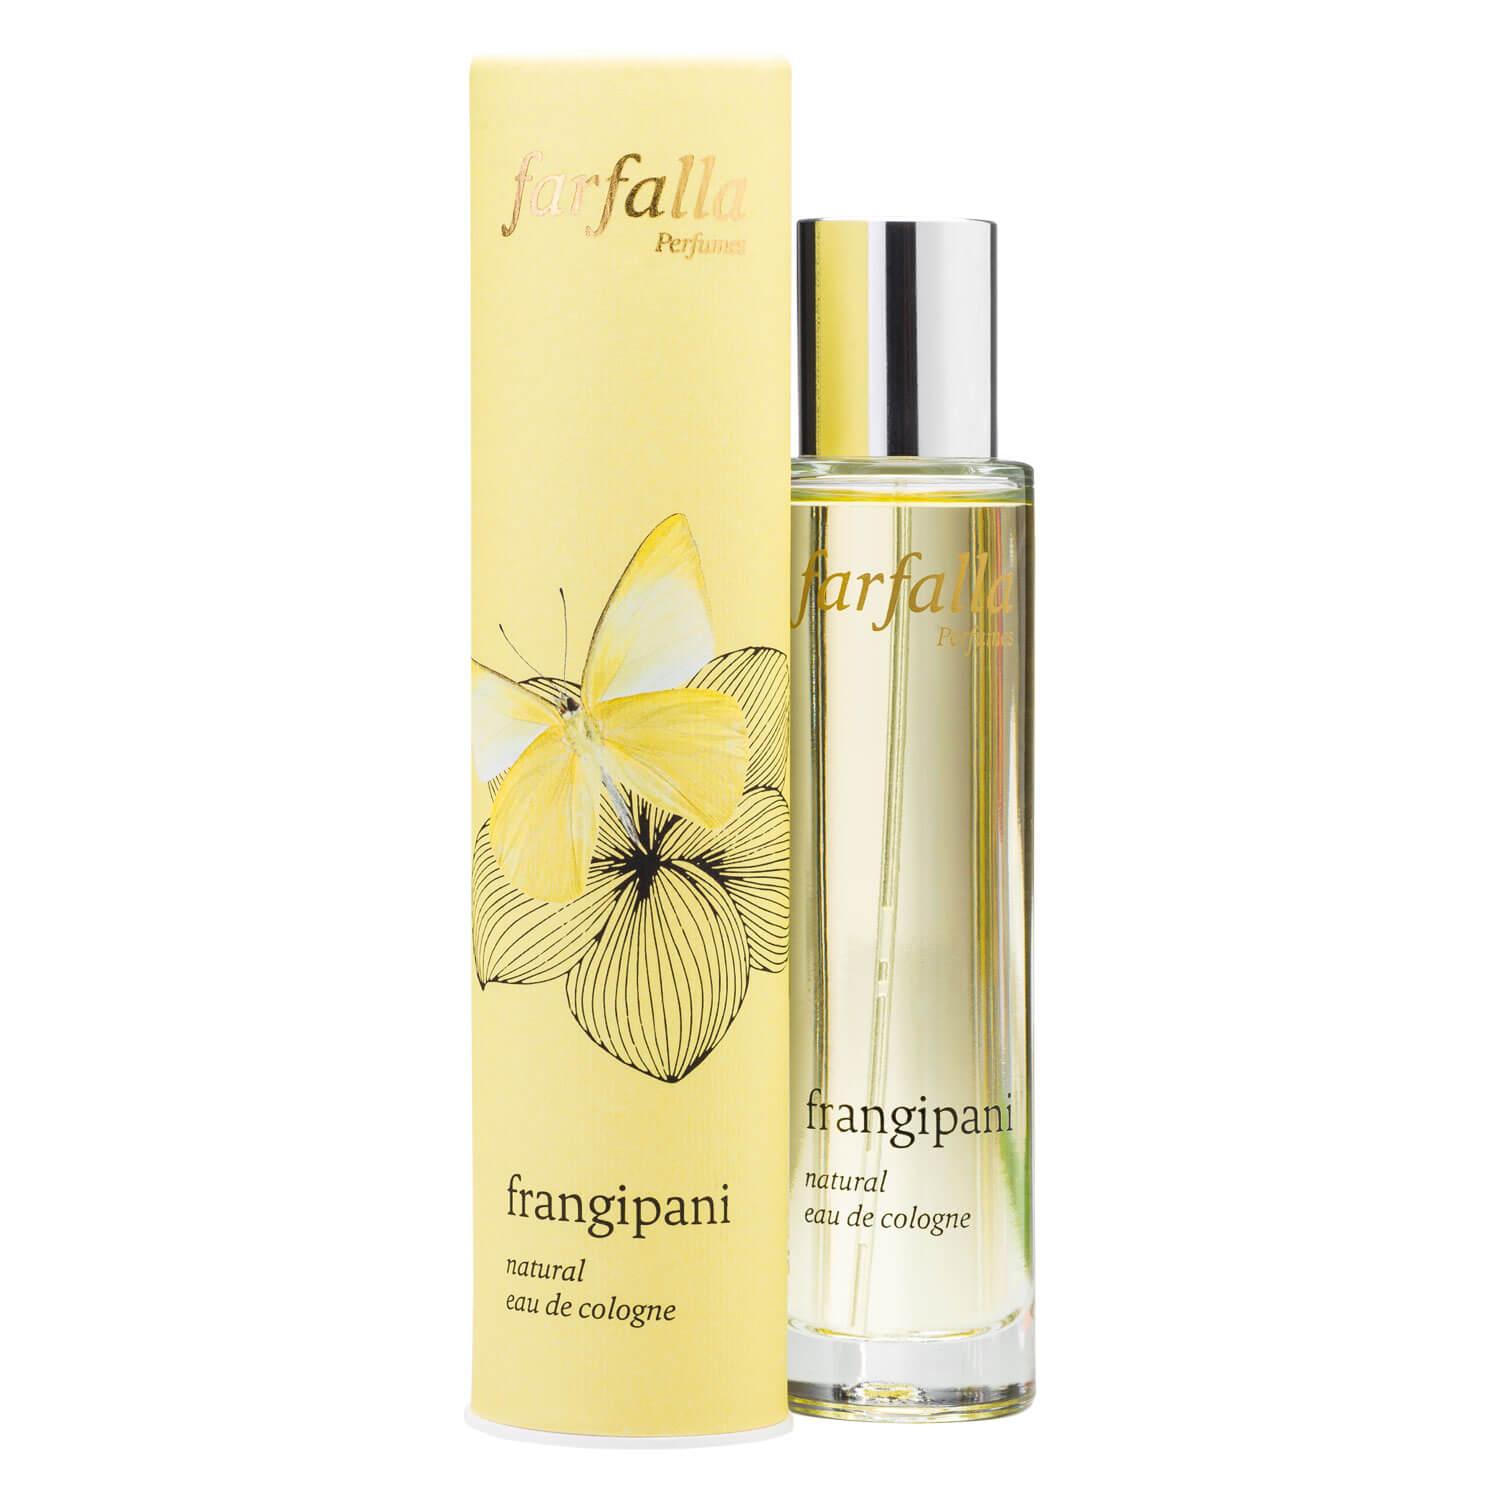 Farfalla Fragrance - Frangipani Natural Eau de Cologne